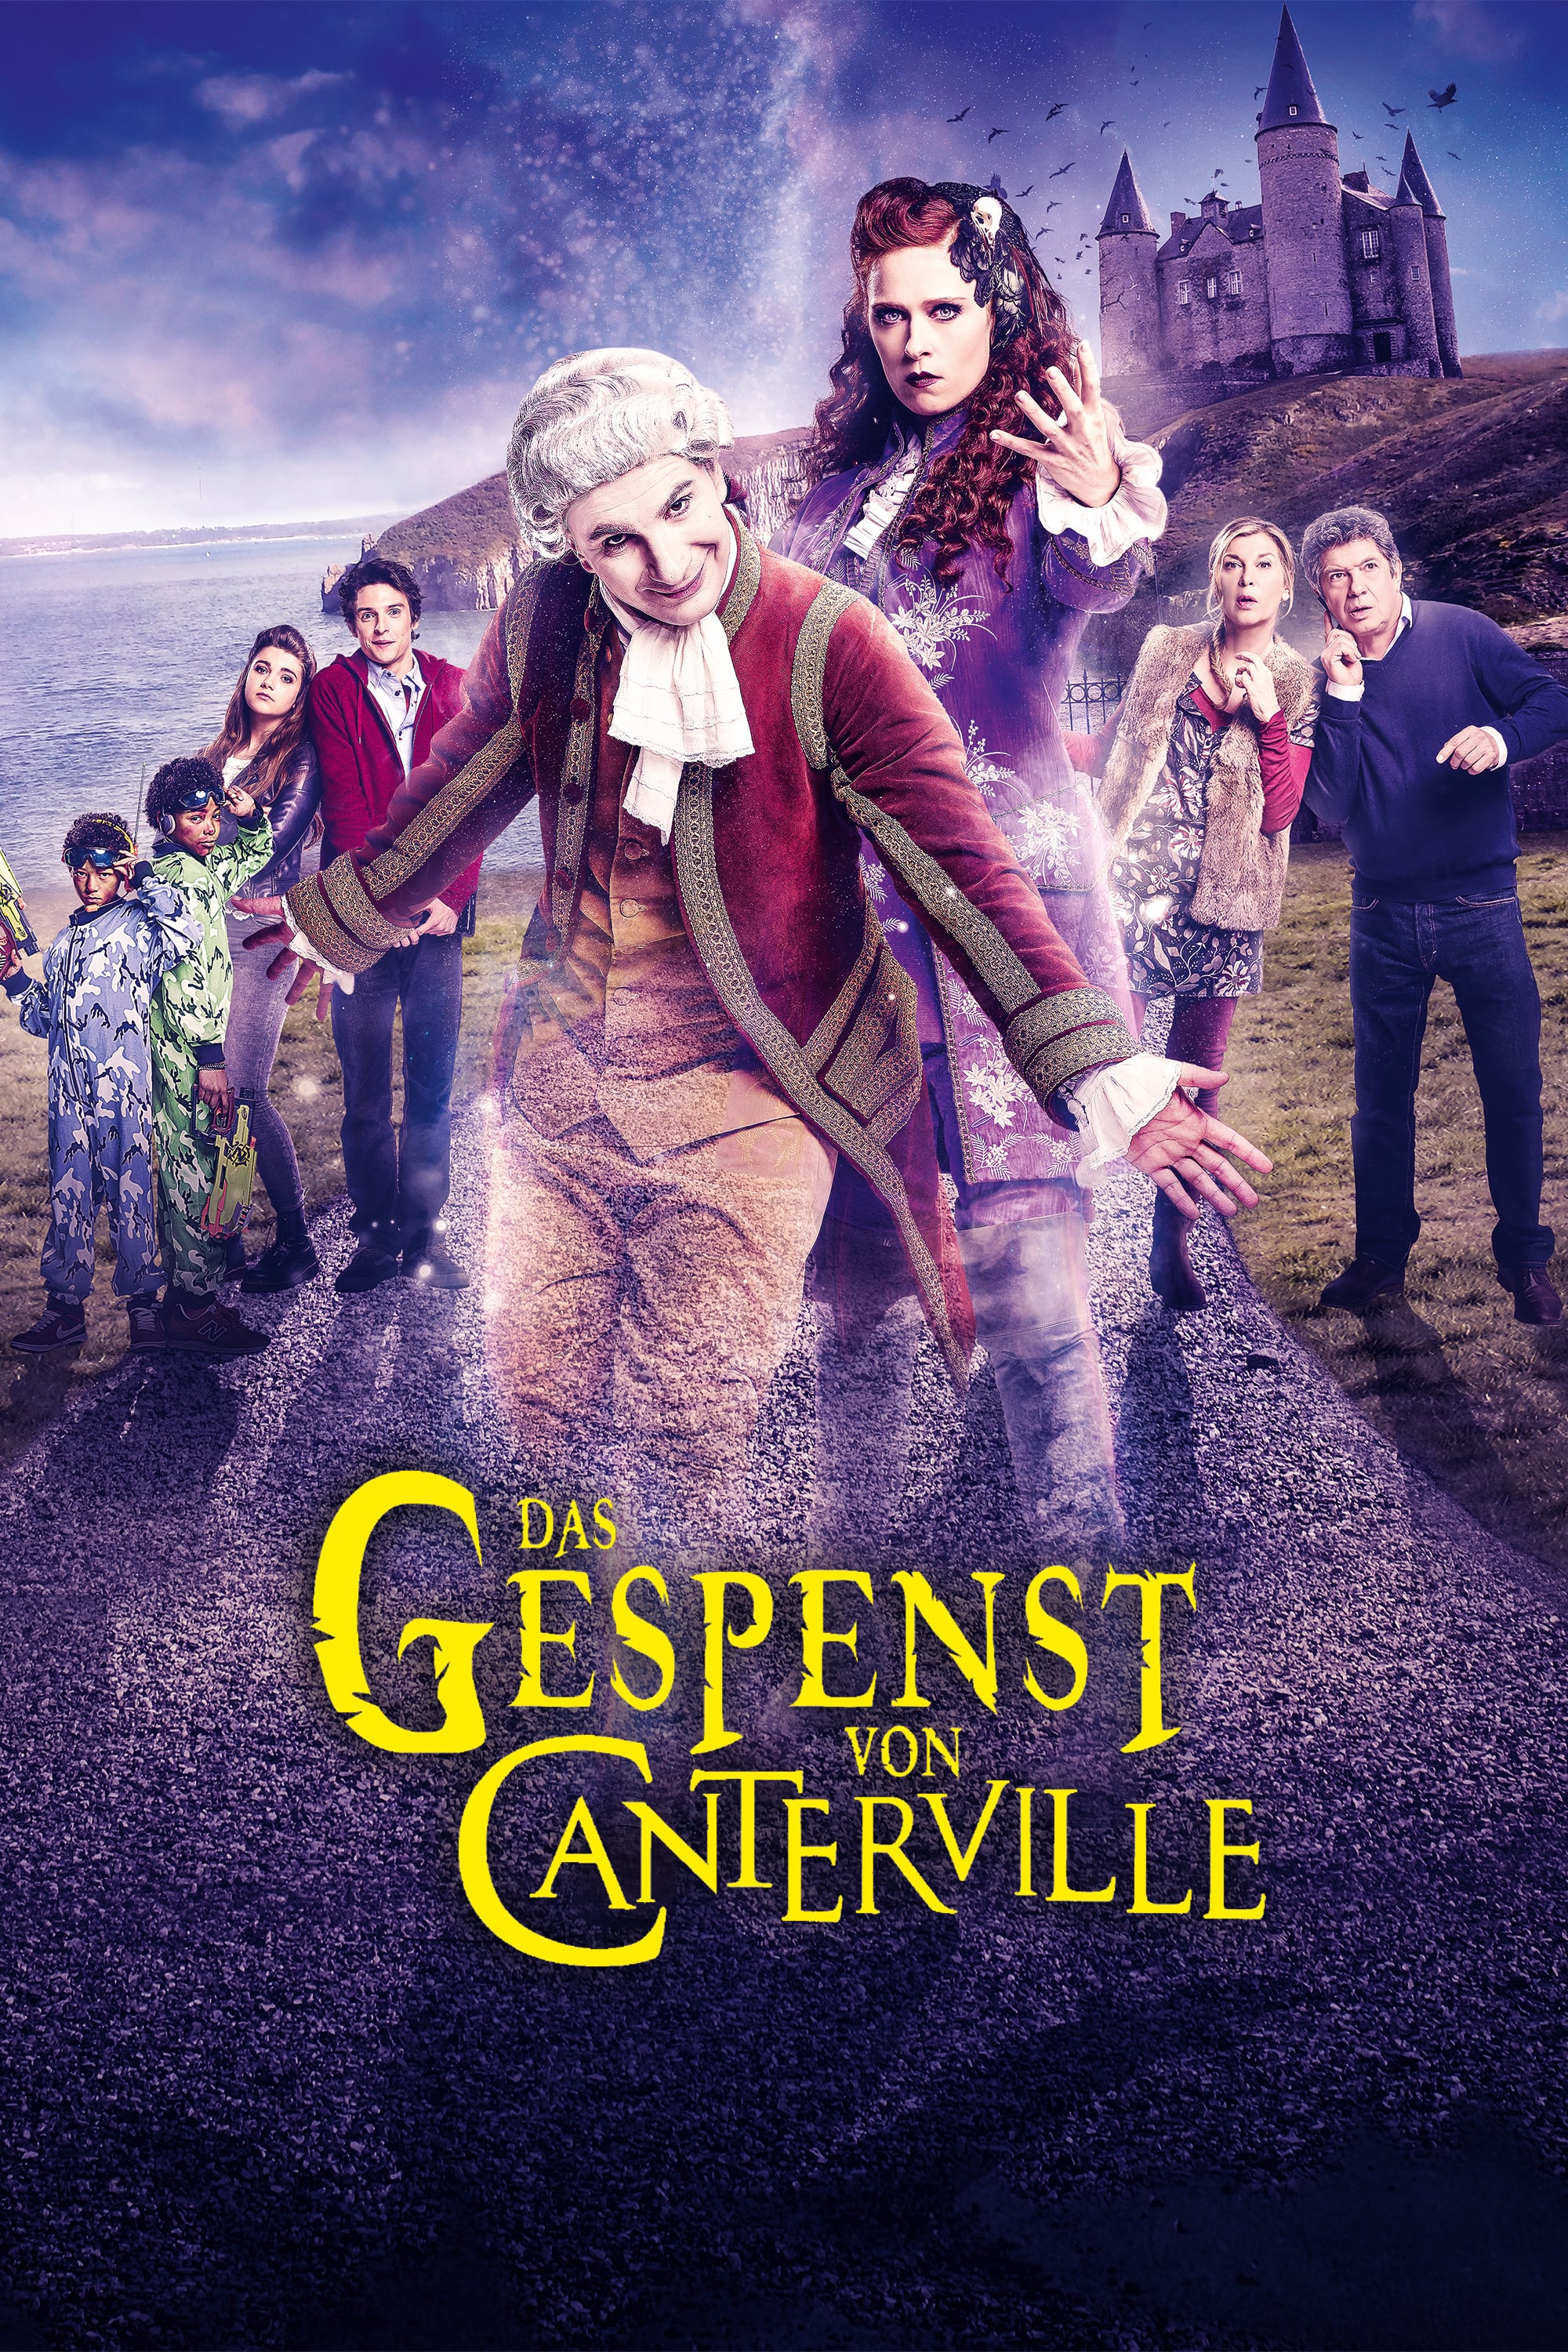 Plakat von "Das Gespenst von Canterville"